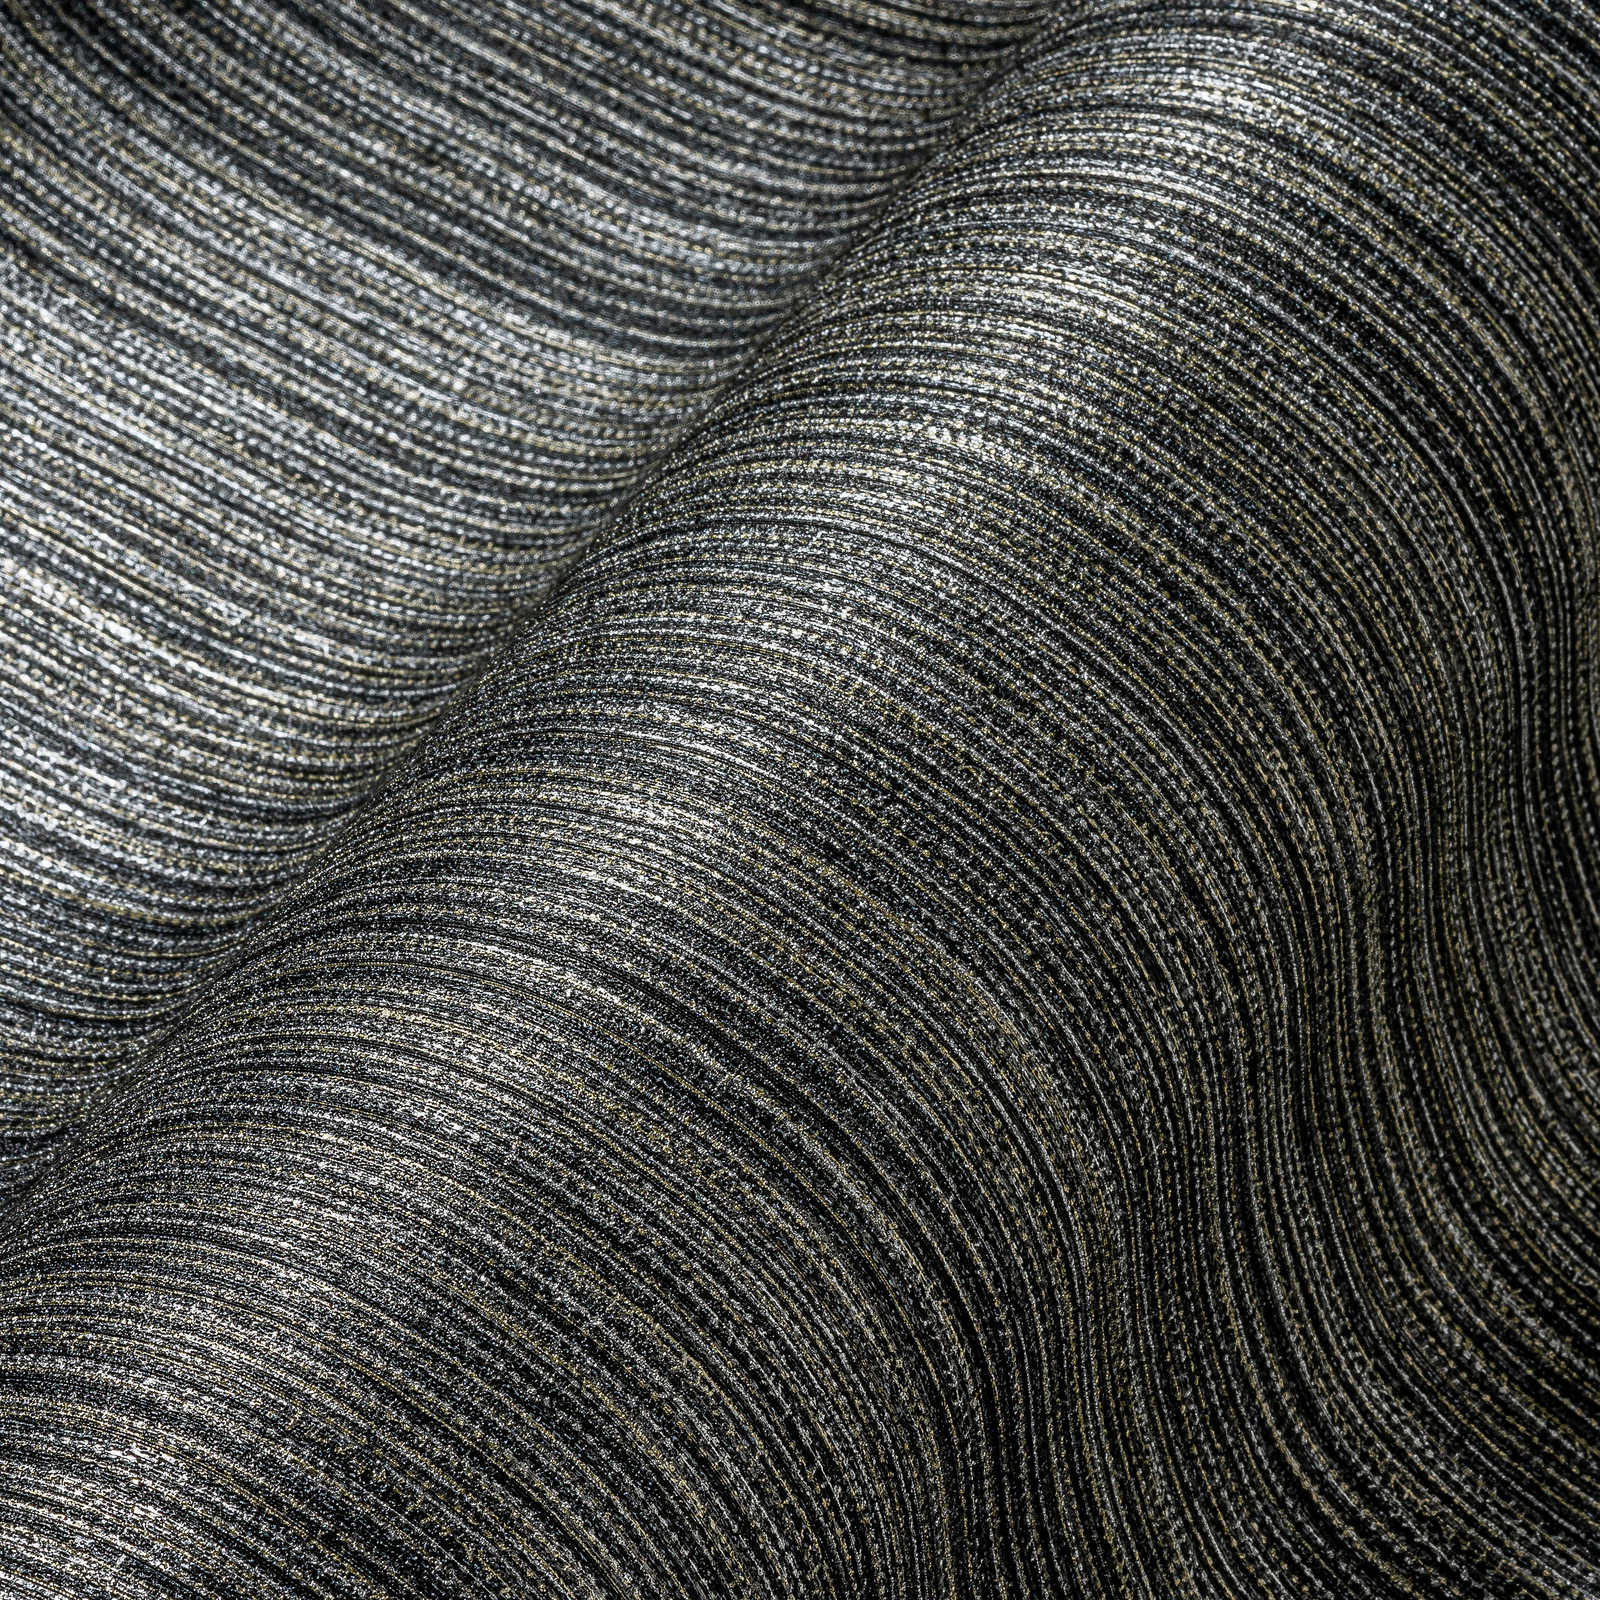             Tapete mit Textildesign und Linieneffekt – Schwarz
        